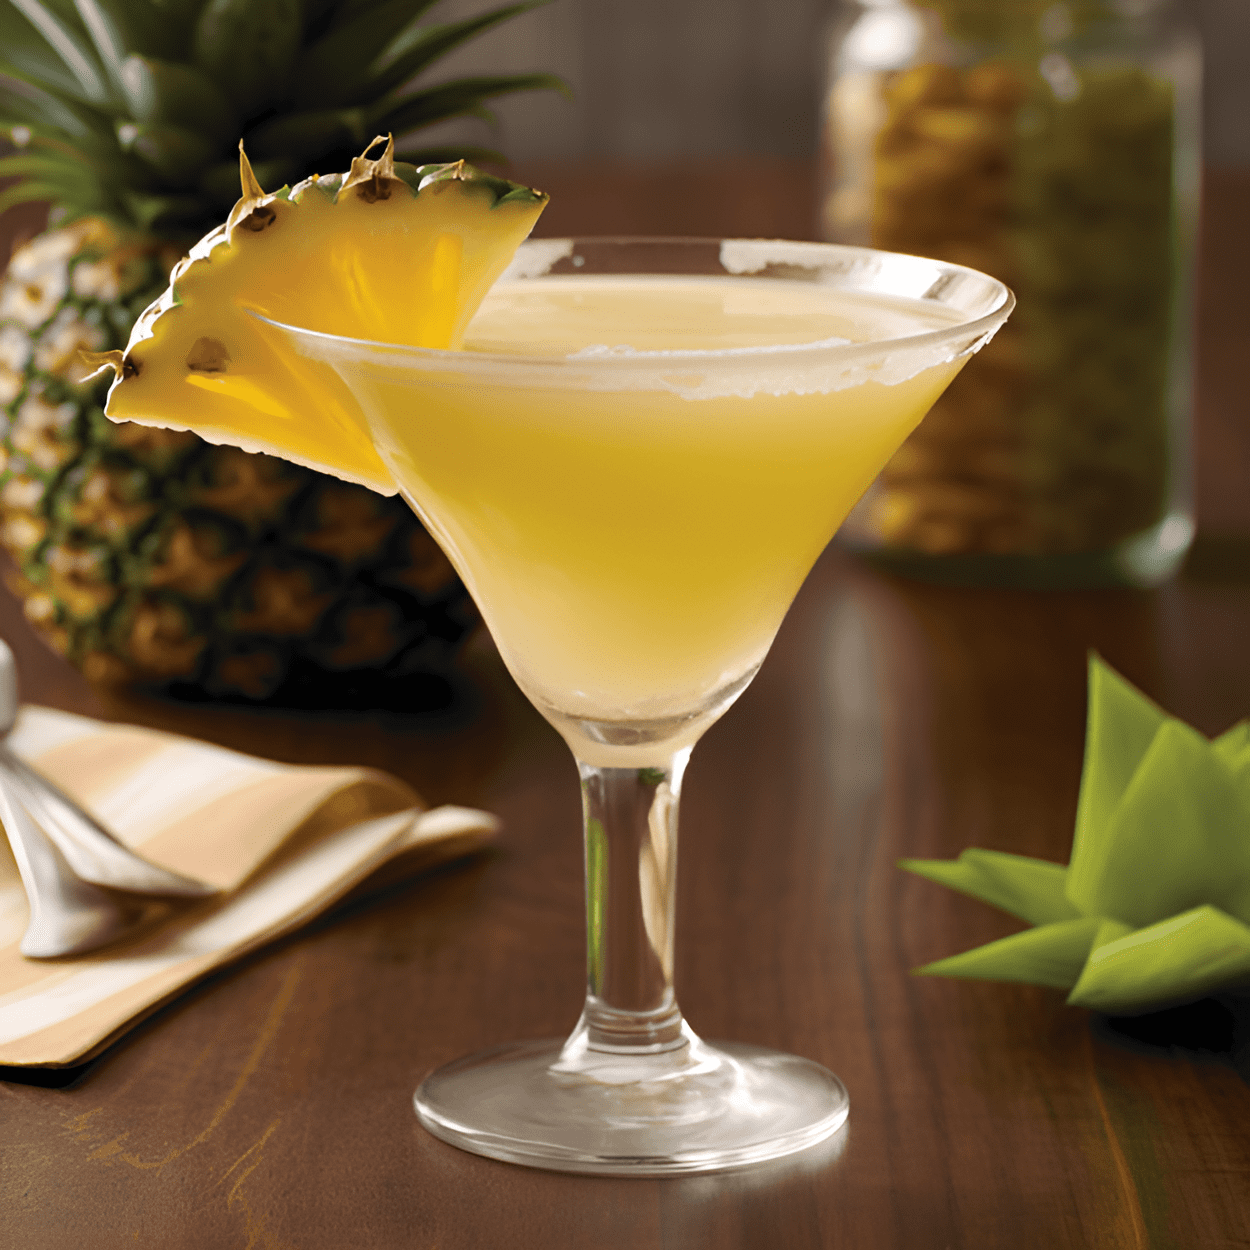 Martini de Piña Tuaca Cóctel Receta - Este cóctel es una deliciosa mezcla de dulce, ácido y ligeramente cremoso. El jugo de piña le da un dulzor tropical, mientras que el Tuaca añade un toque de vainilla y cítricos. El final es suave y refrescante.